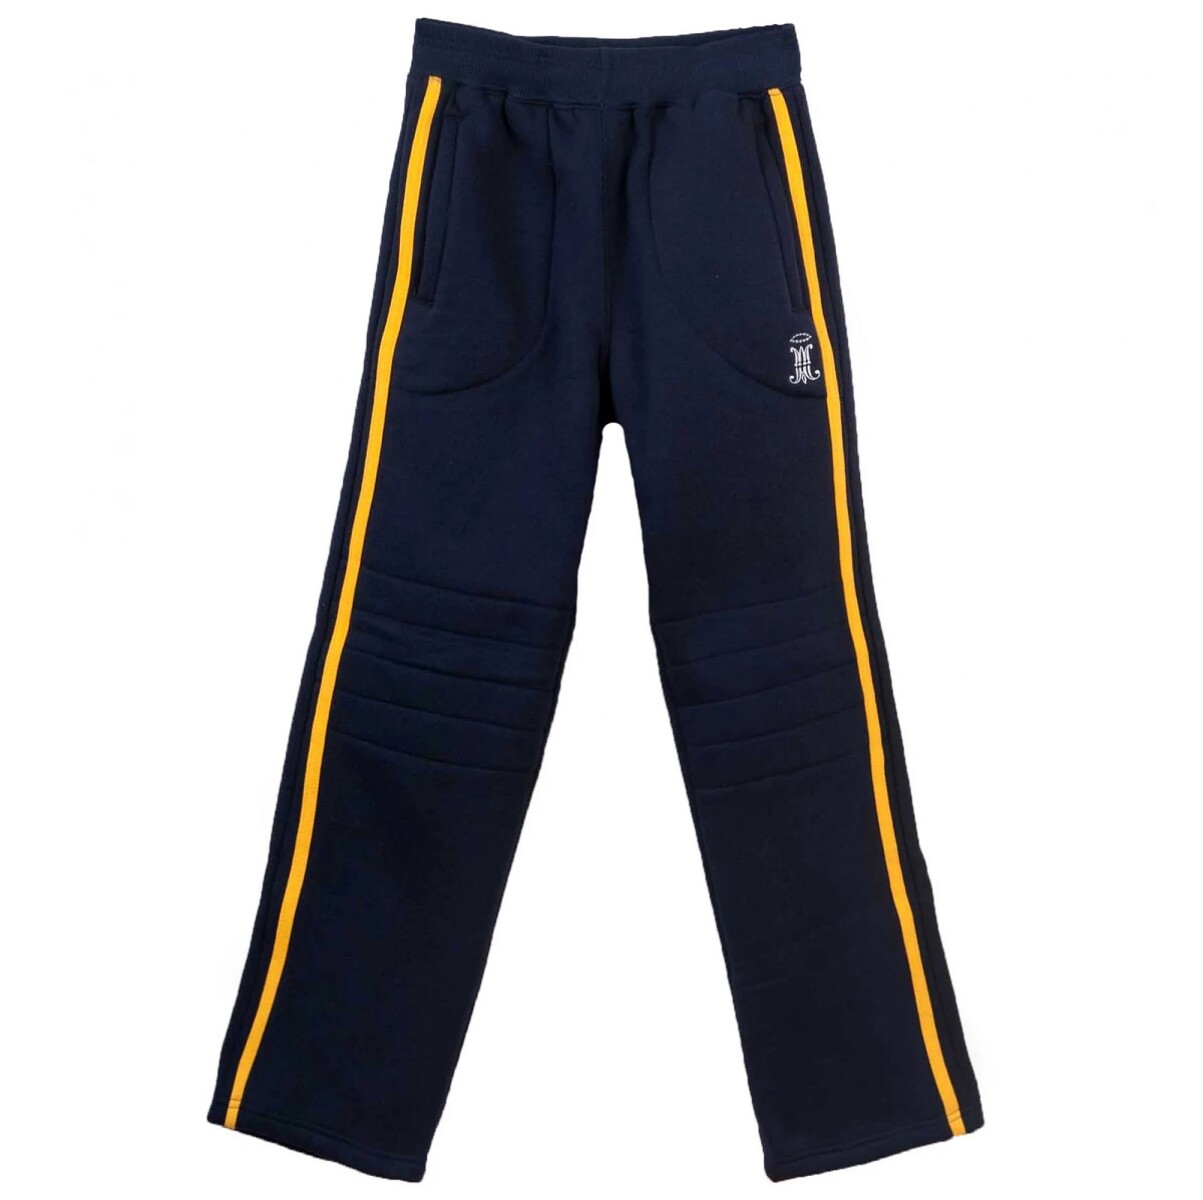 Pantalón deportivo Zorrilla de San Martin - Navy 